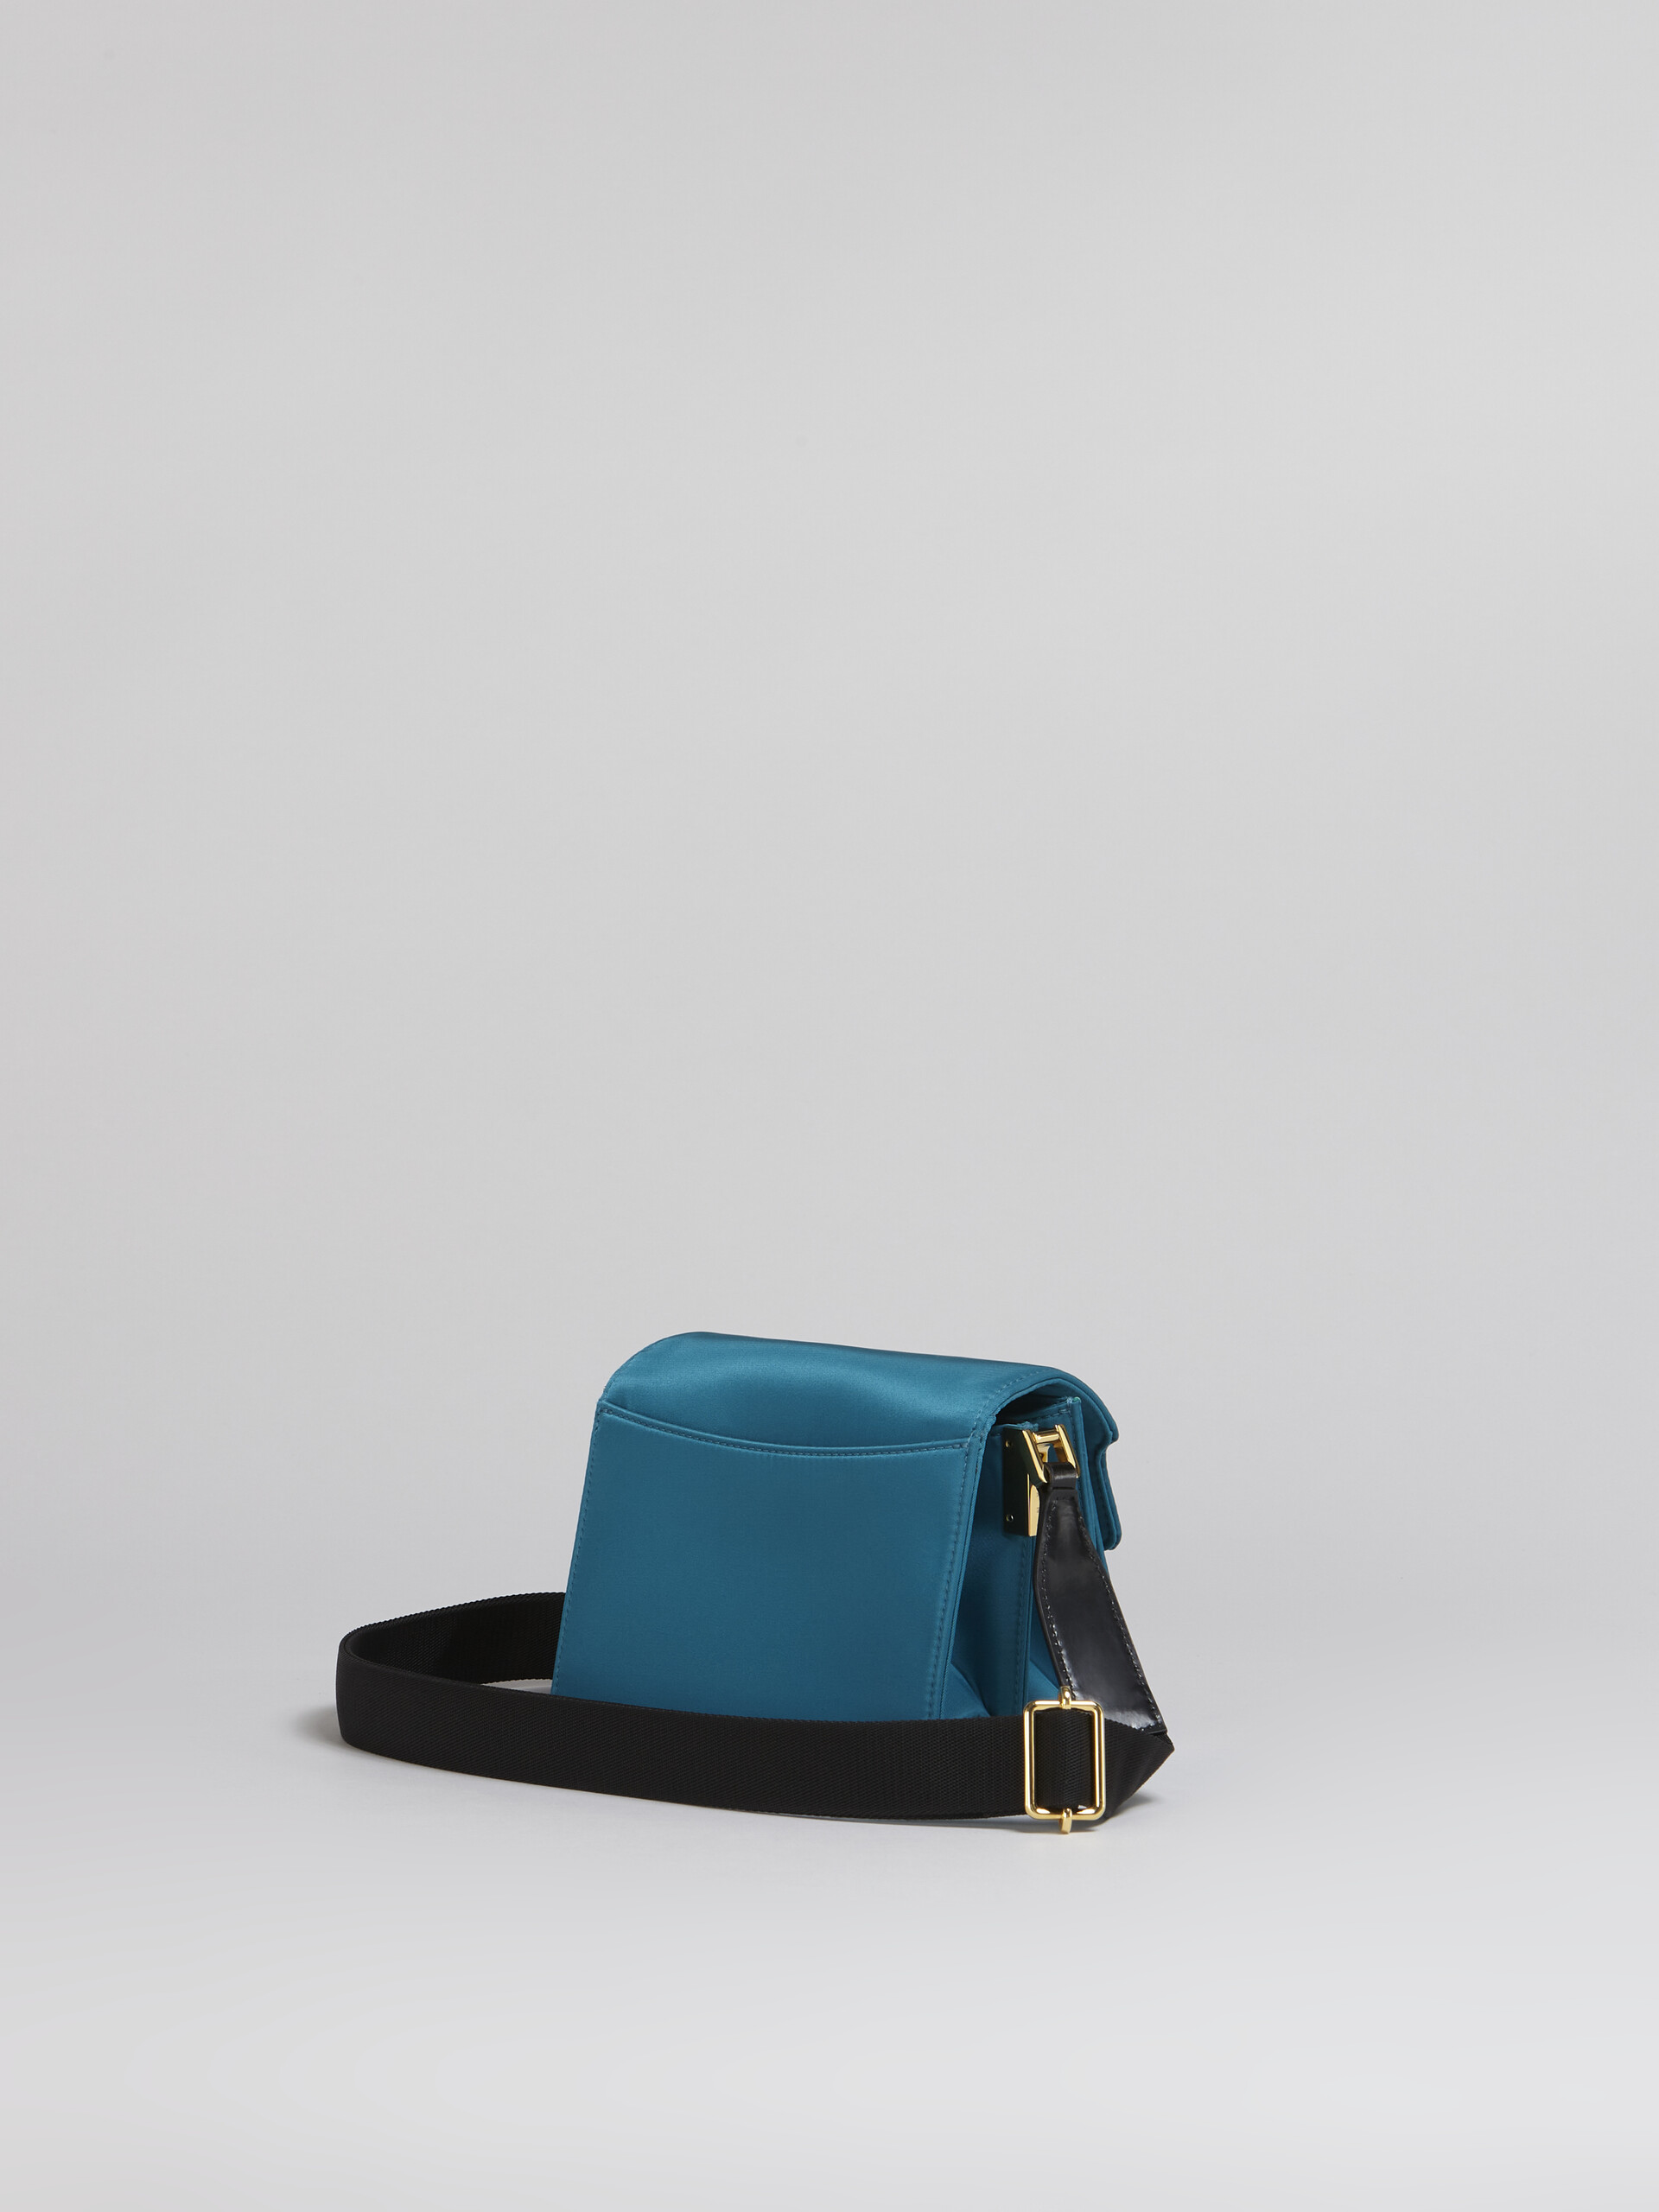 TRUNK LIGHT bag in nylon imbottito blu - Borse a spalla - Image 3